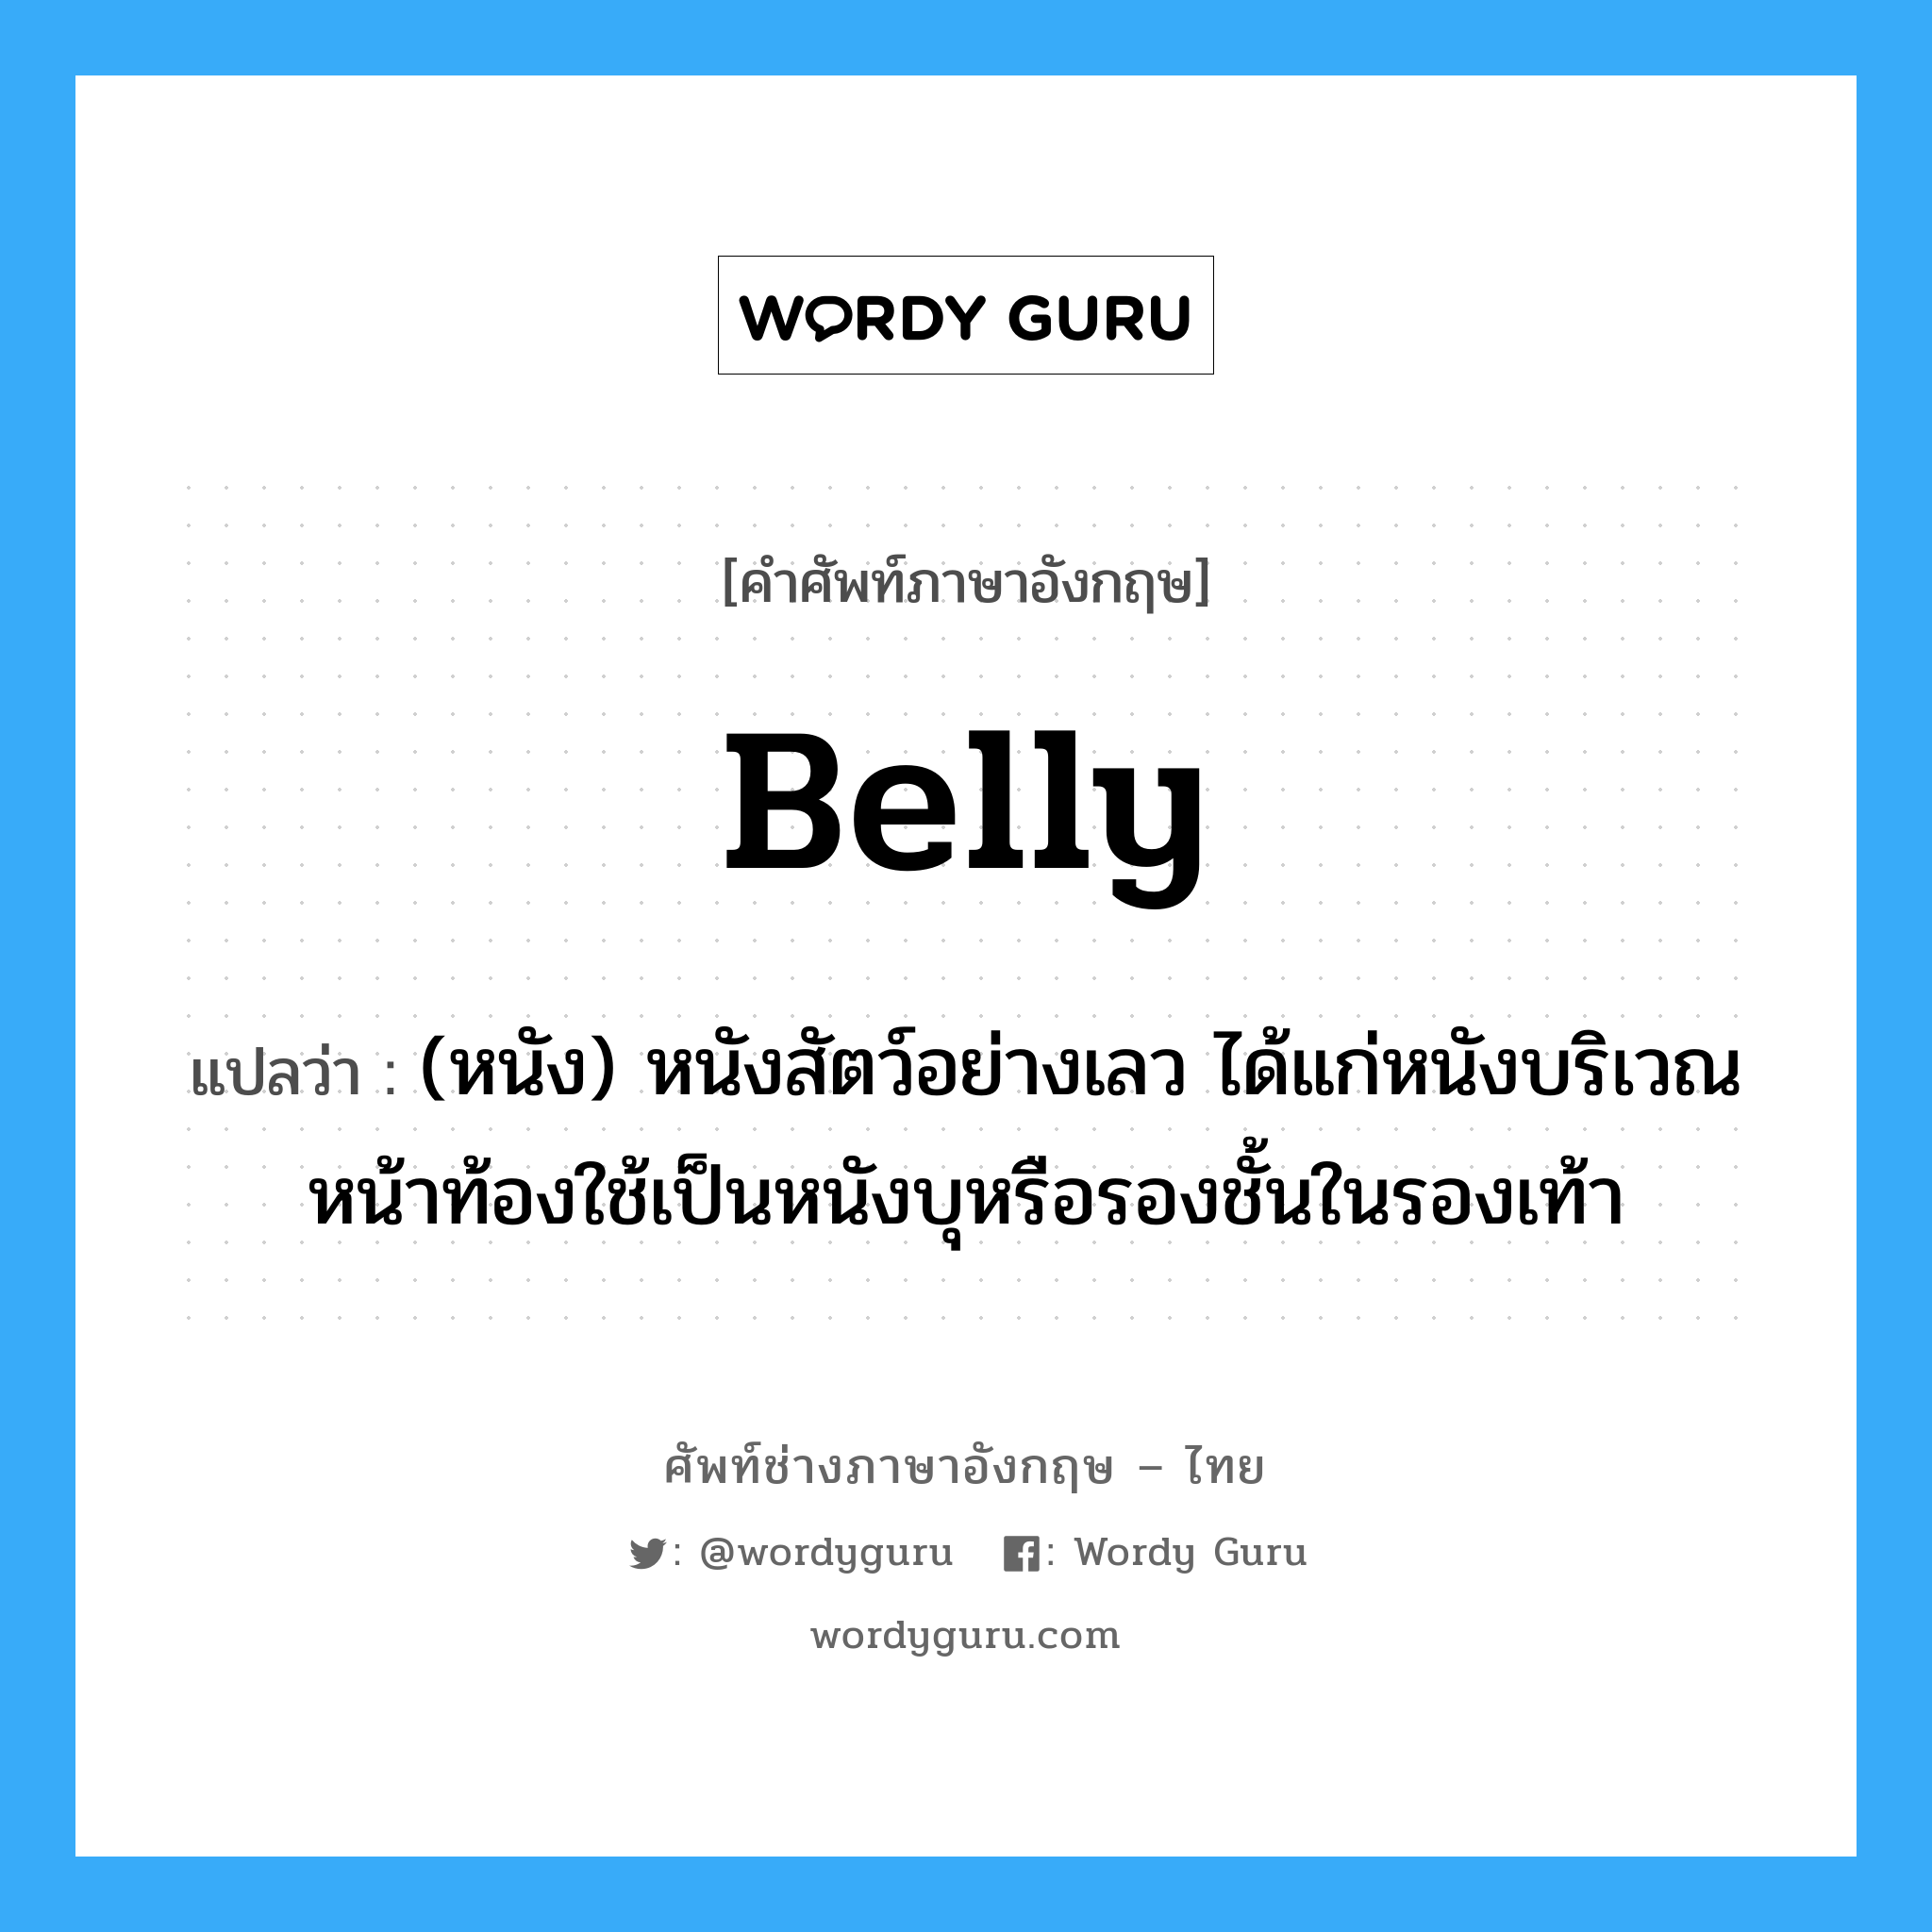 belly แปลว่า?, คำศัพท์ช่างภาษาอังกฤษ - ไทย belly คำศัพท์ภาษาอังกฤษ belly แปลว่า (หนัง) หนังสัตว์อย่างเลว ได้แก่หนังบริเวณหน้าท้องใช้เป็นหนังบุหรือรองชั้นในรองเท้า